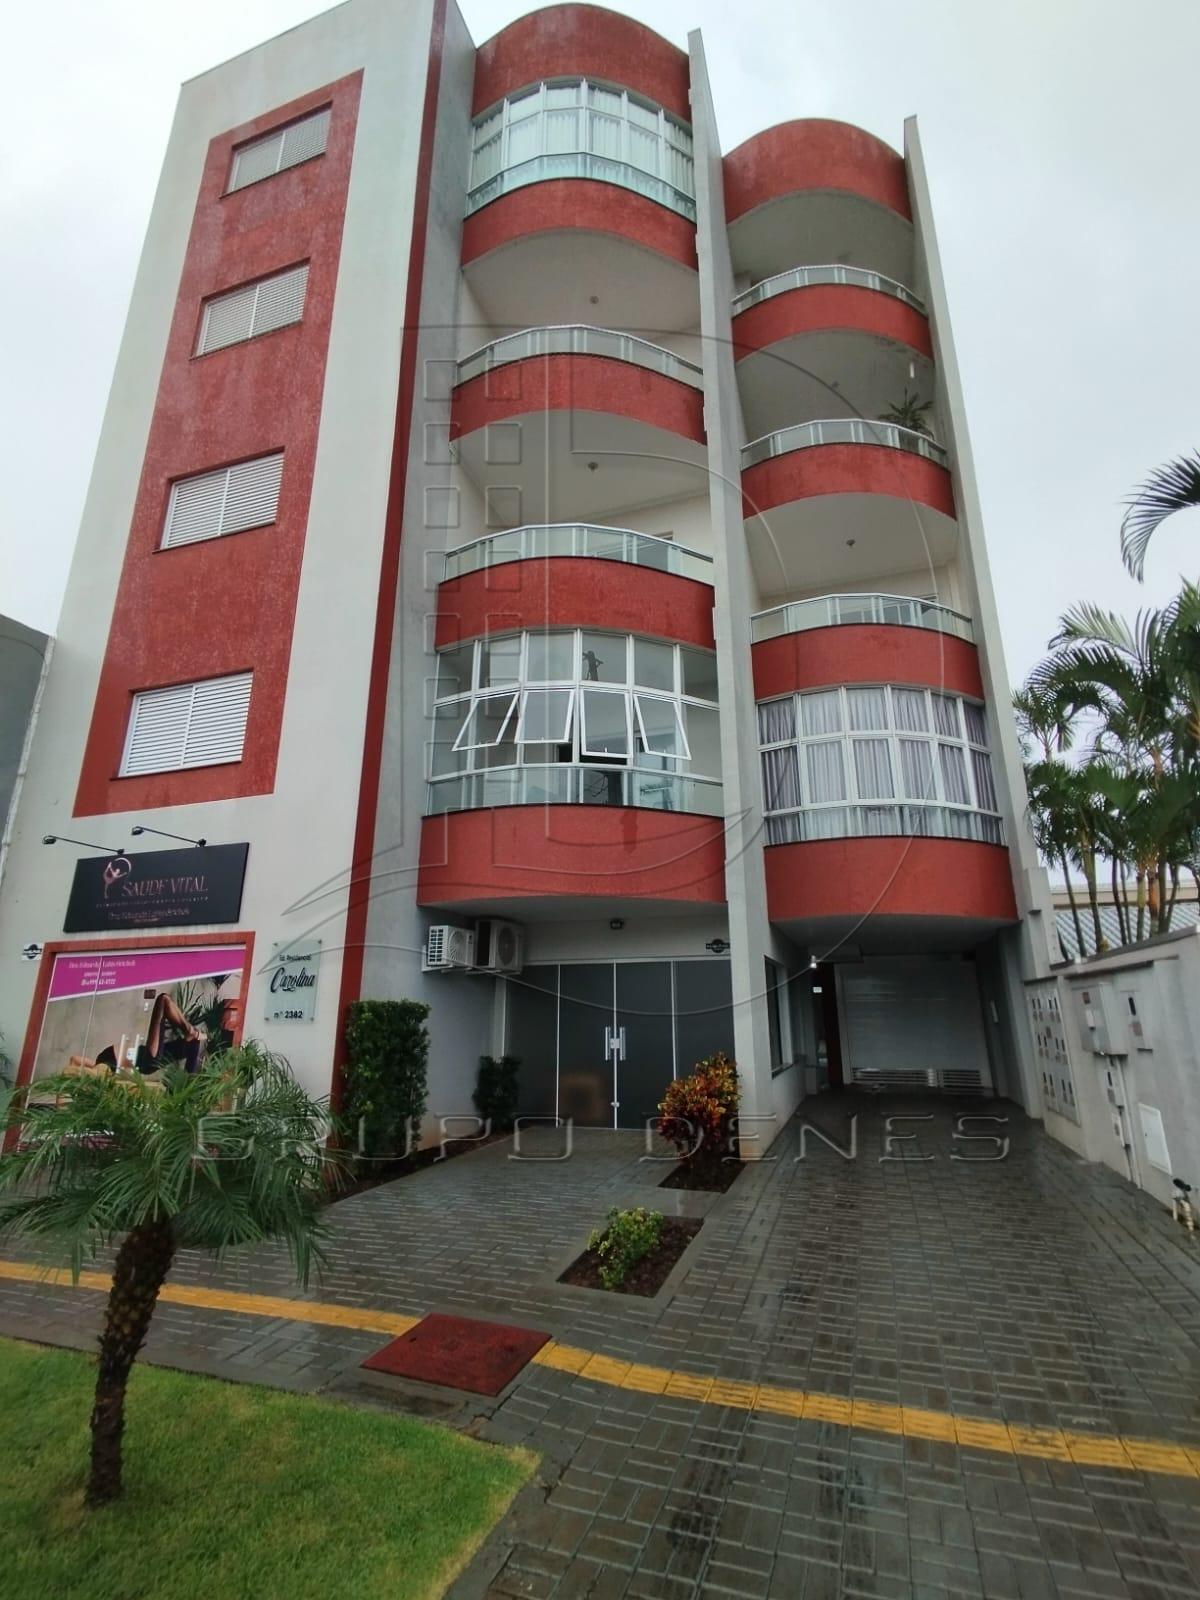 Apartamento com 3 dormitórios para locação, Cidade Alta, MEDIANEIRA - PR